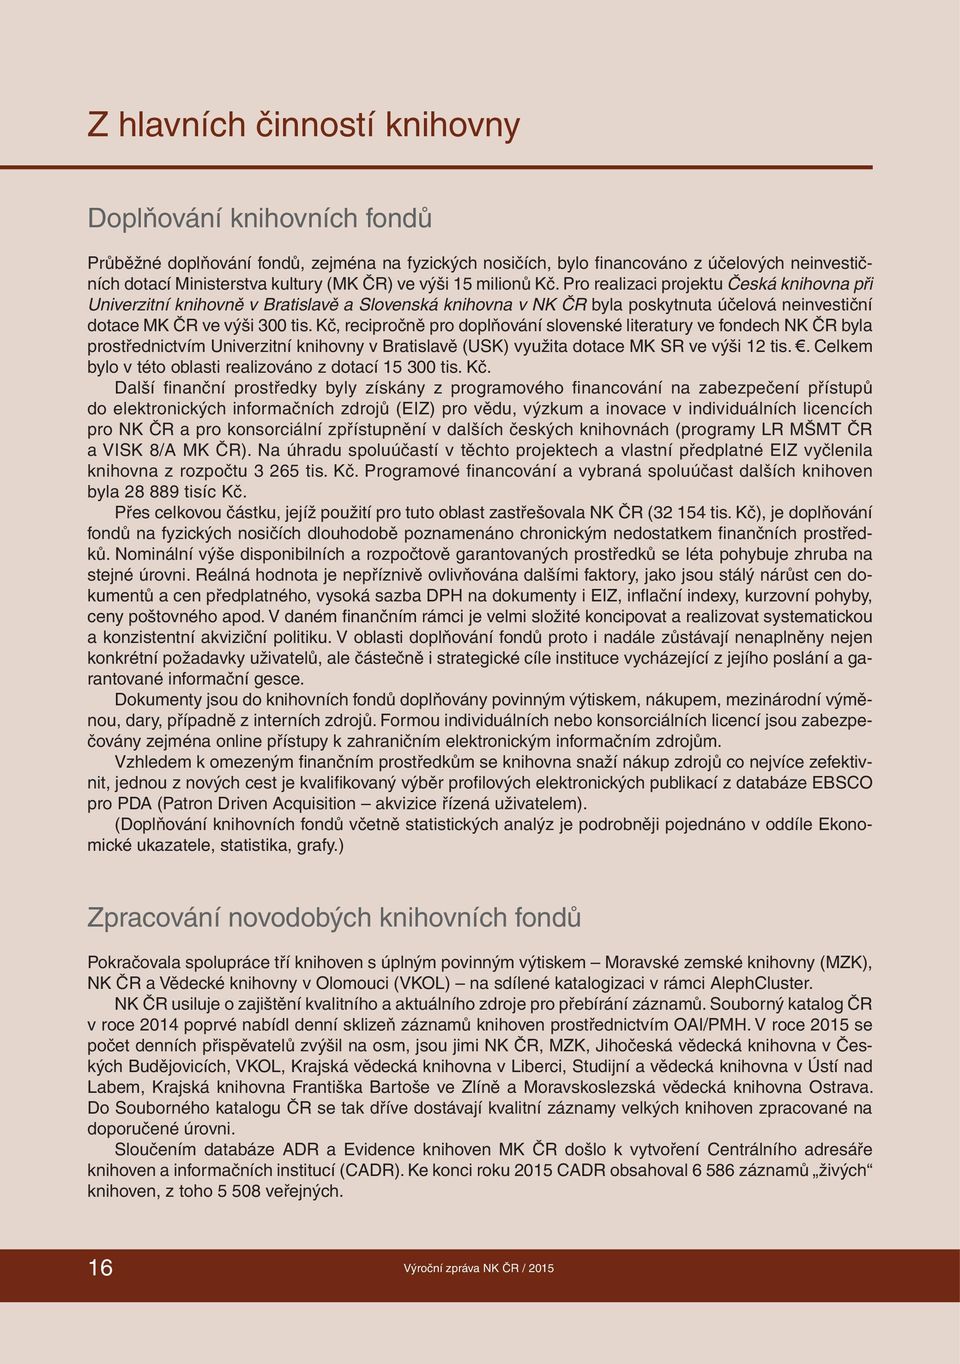 Kč, recipročně pro doplňování slovenské literatury ve fondech NK ČR byla prostřednictvím Univerzitní knihovny v Bratislavě (USK) využita dotace MK SR ve výši 12 tis.